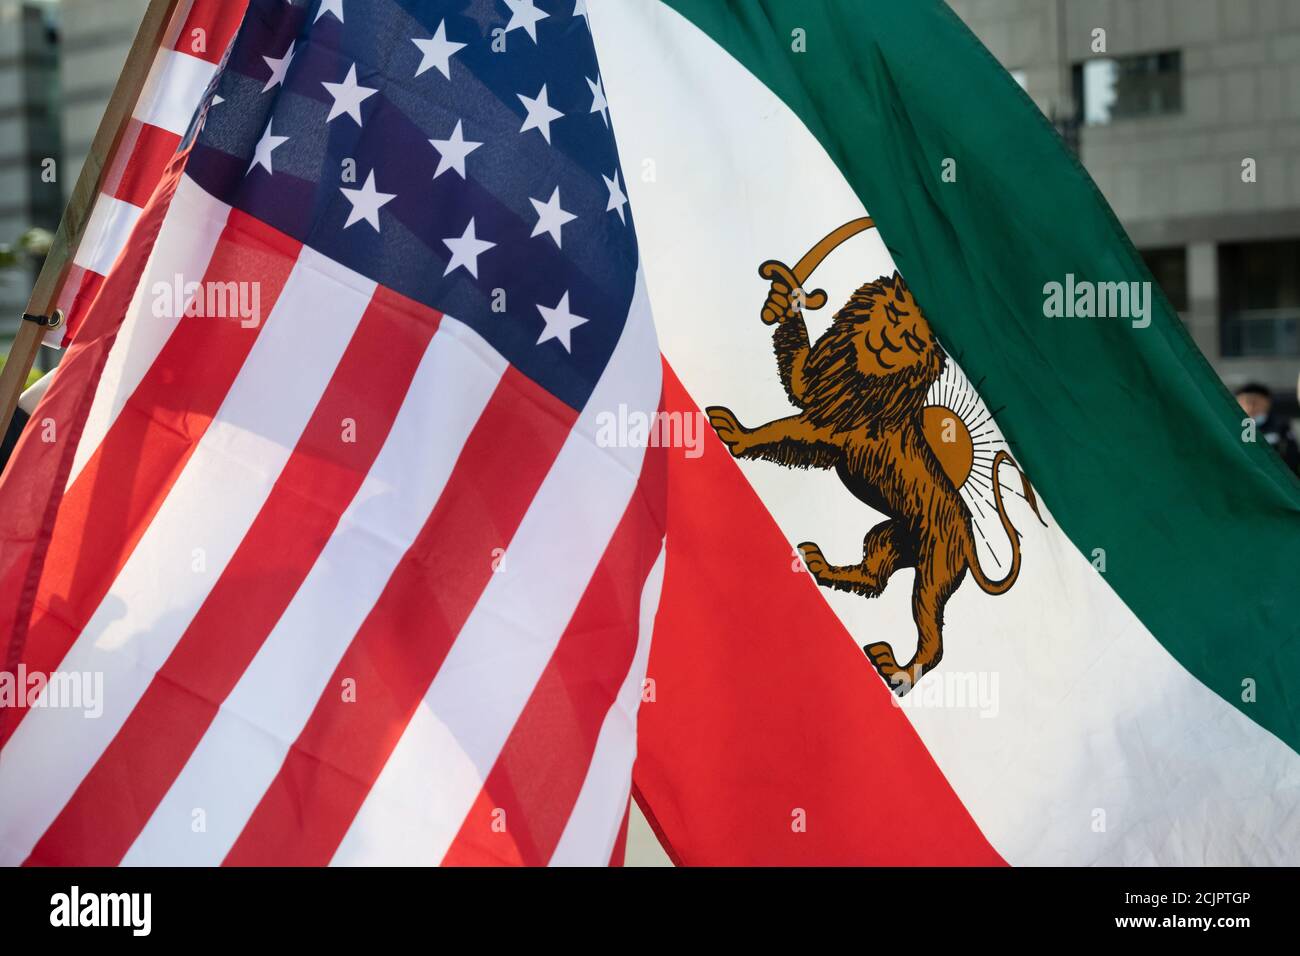 Amerikanisches und vorislamisches Regime iranische Flaggen fliegen in Freundschaft bei einem Protest, der das Regime für die Hinrichtung von Navid Afkari kritisiert. Stockfoto